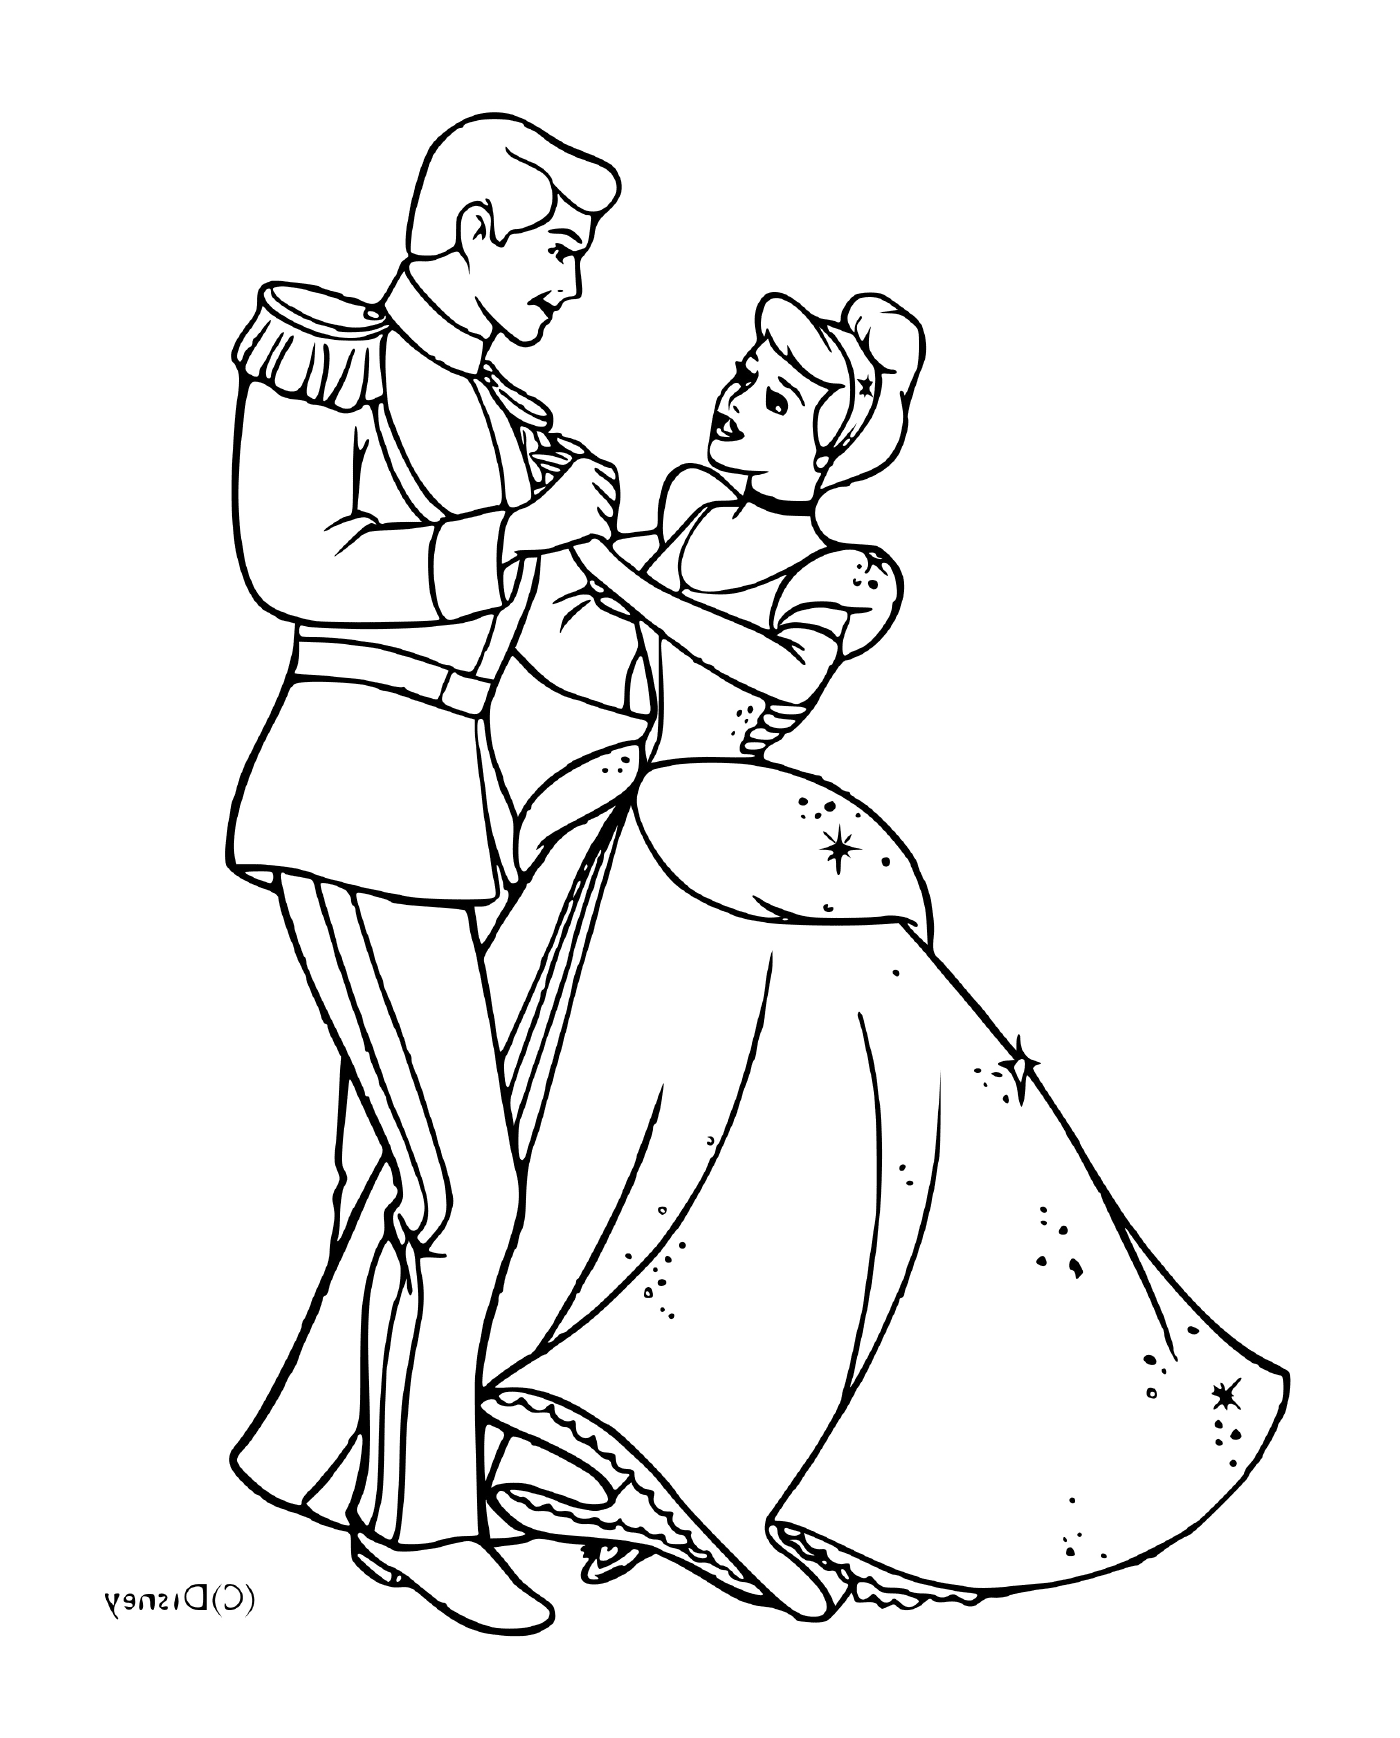  灰姑娘和她迷人的王子 一起跳舞 